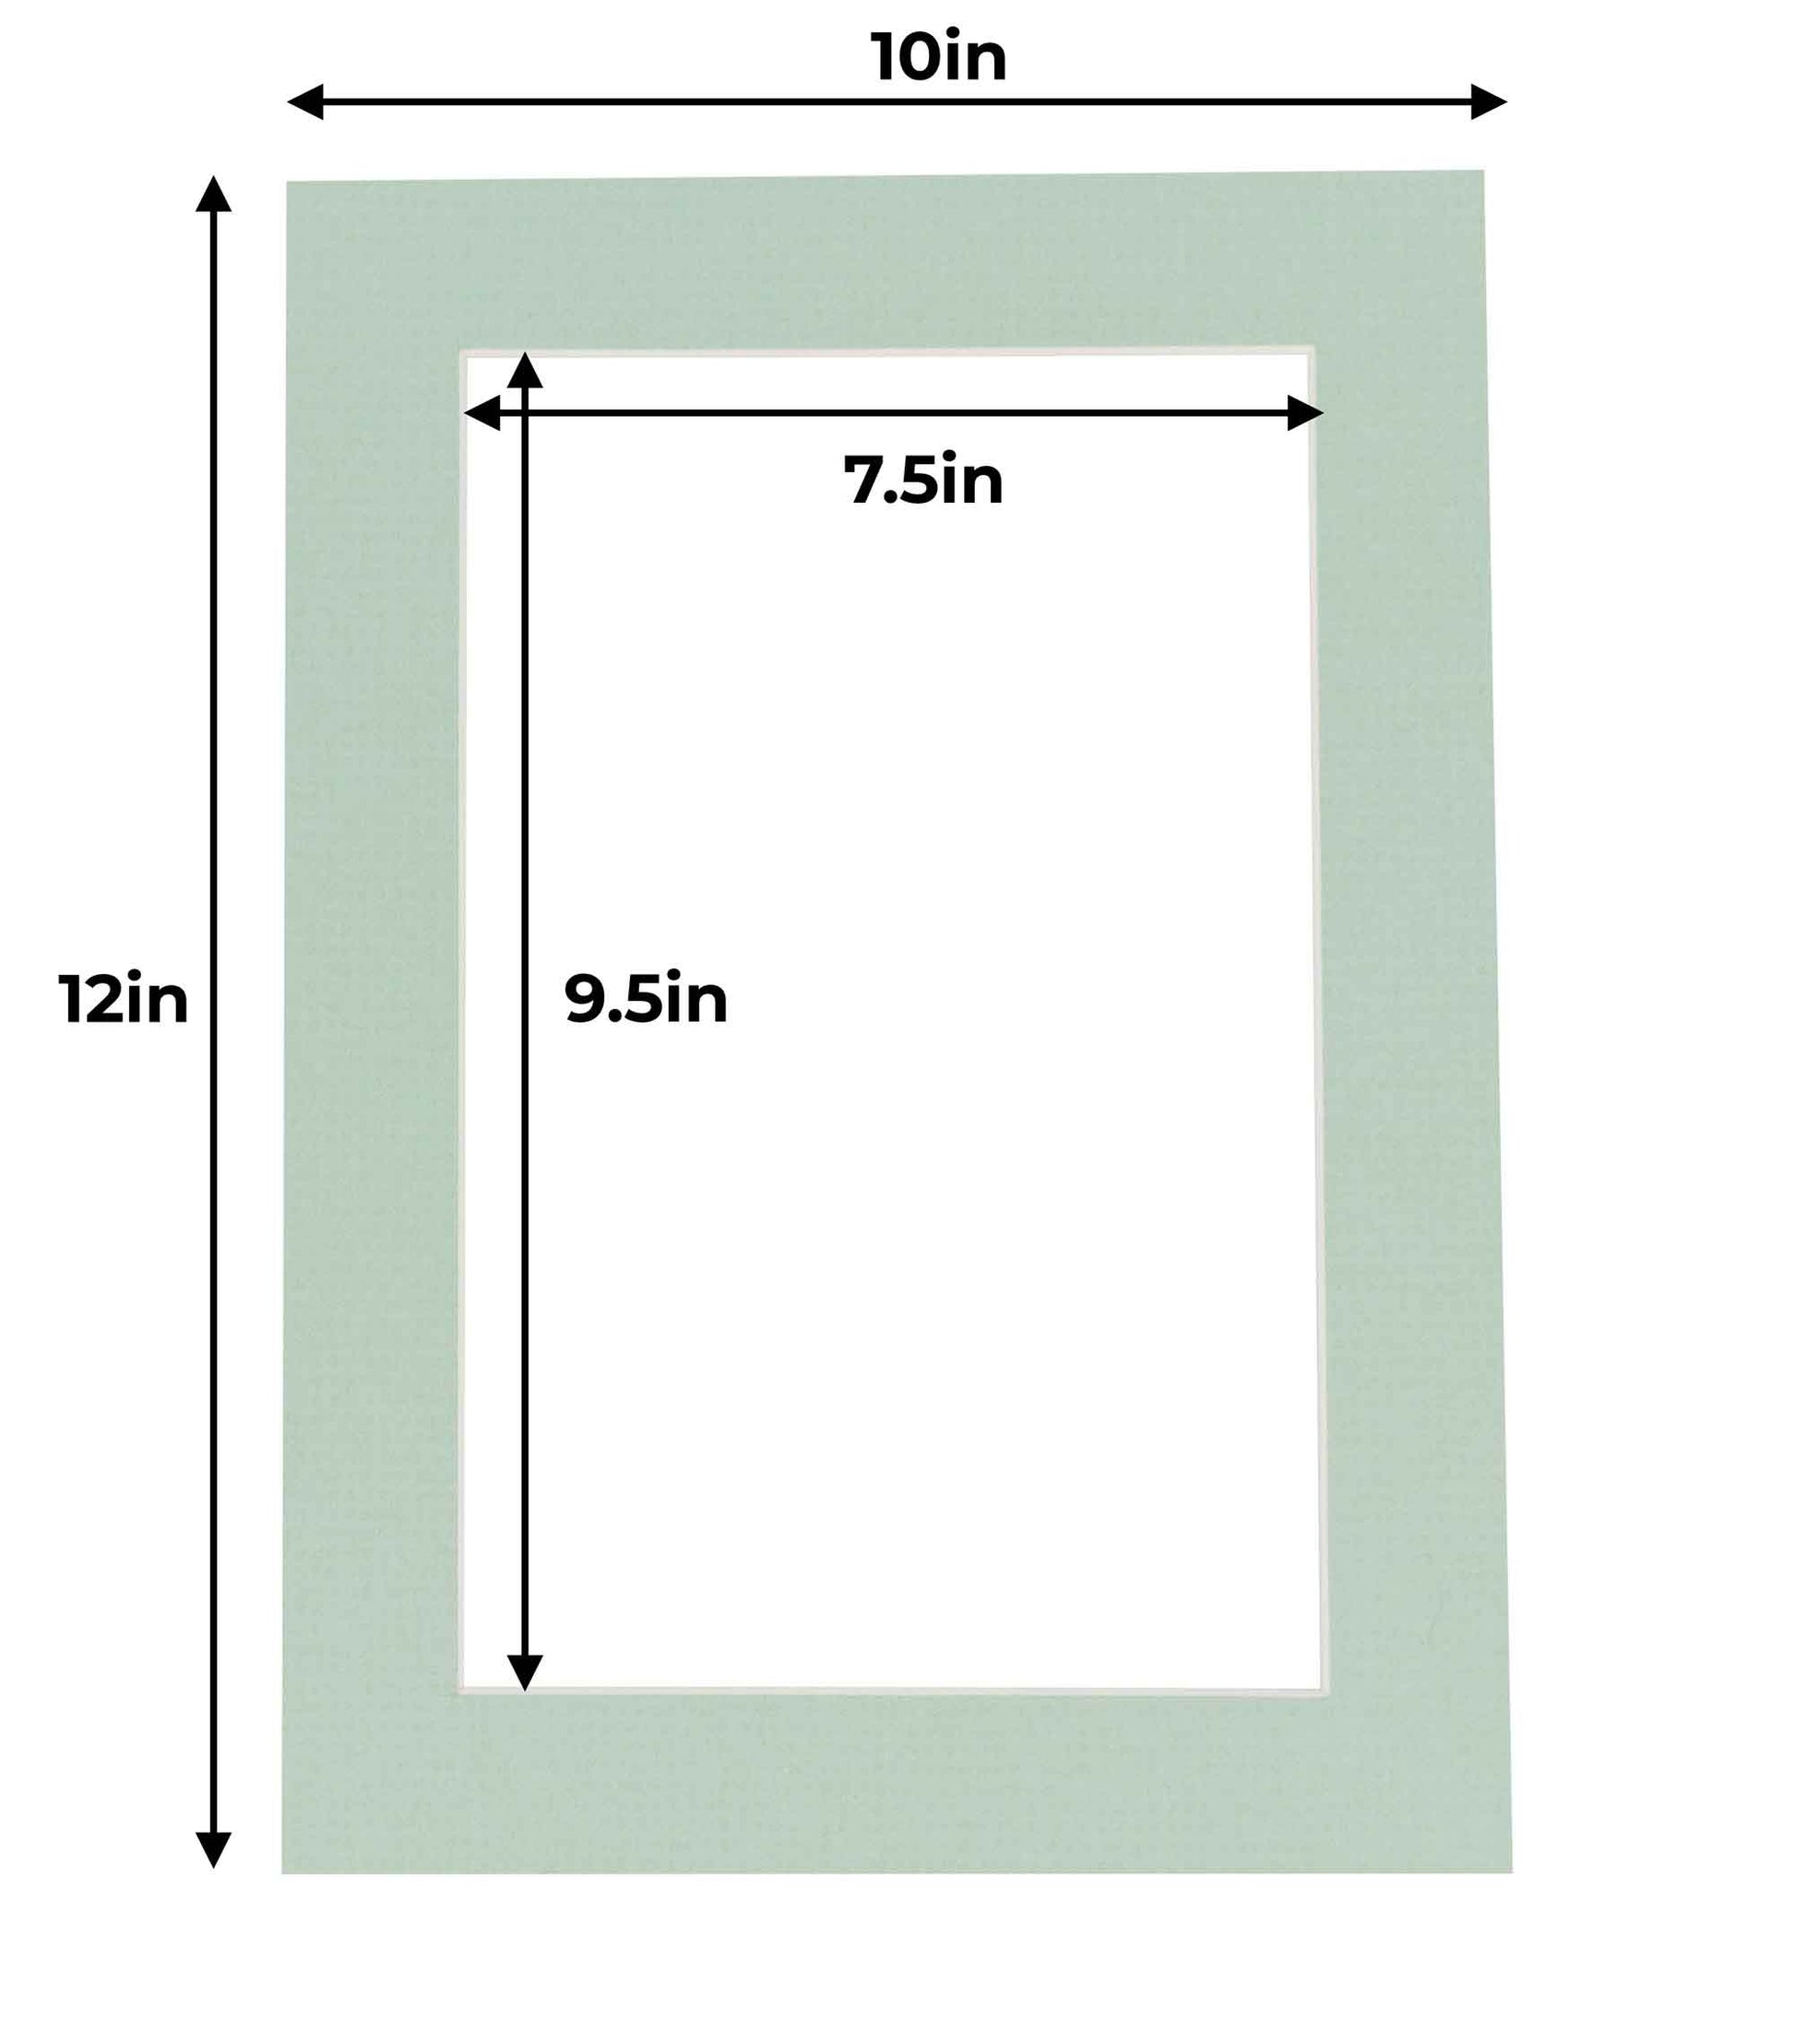 10x10 Mat for 20x20 Frame - Precut Mat Board Acid-Free Honeydew